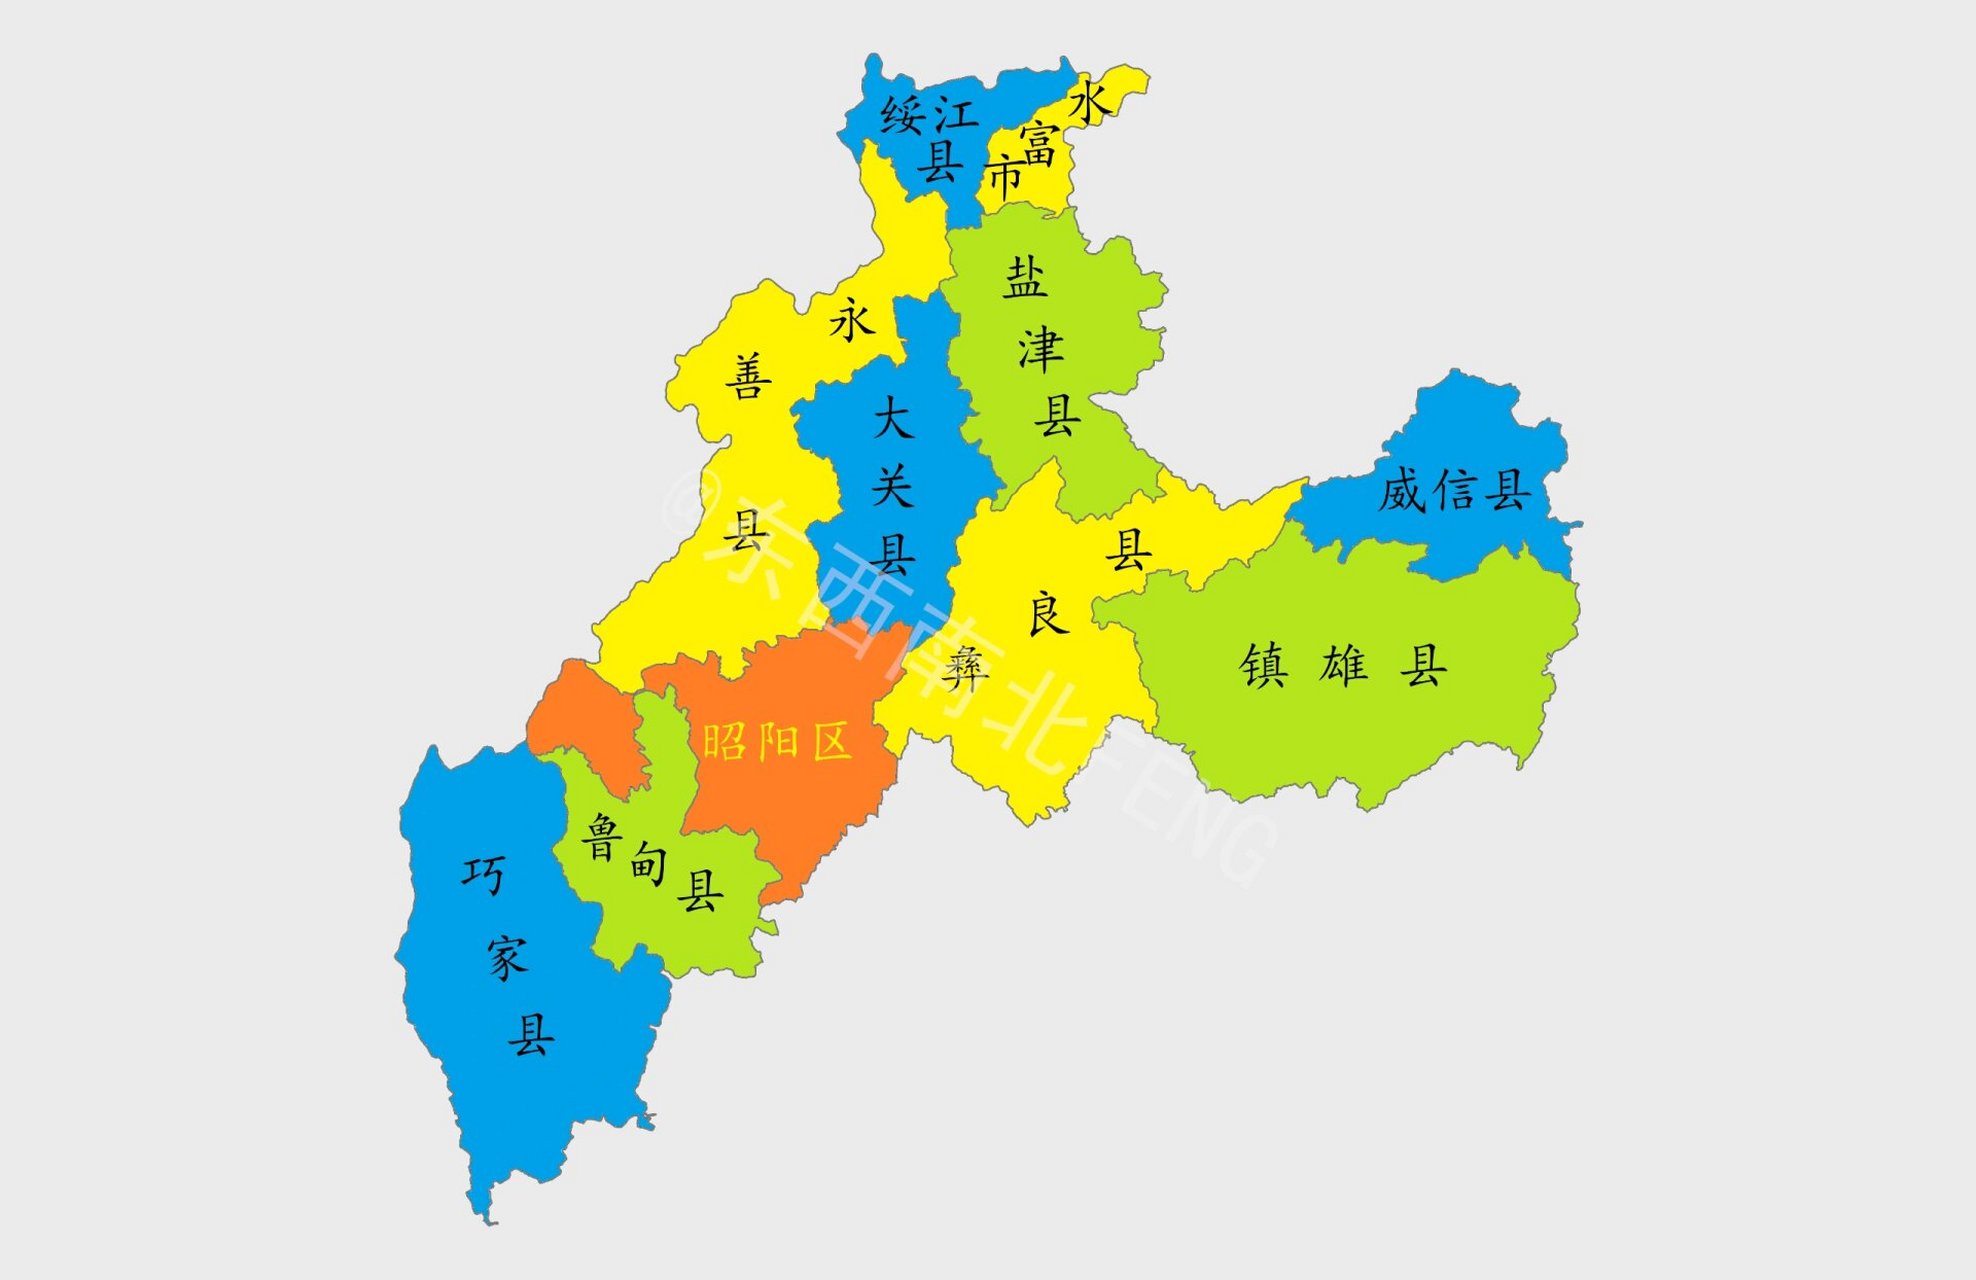 云南行政区划地图 昭通位于云南省东北部,金沙江下游右岸,地处云,贵